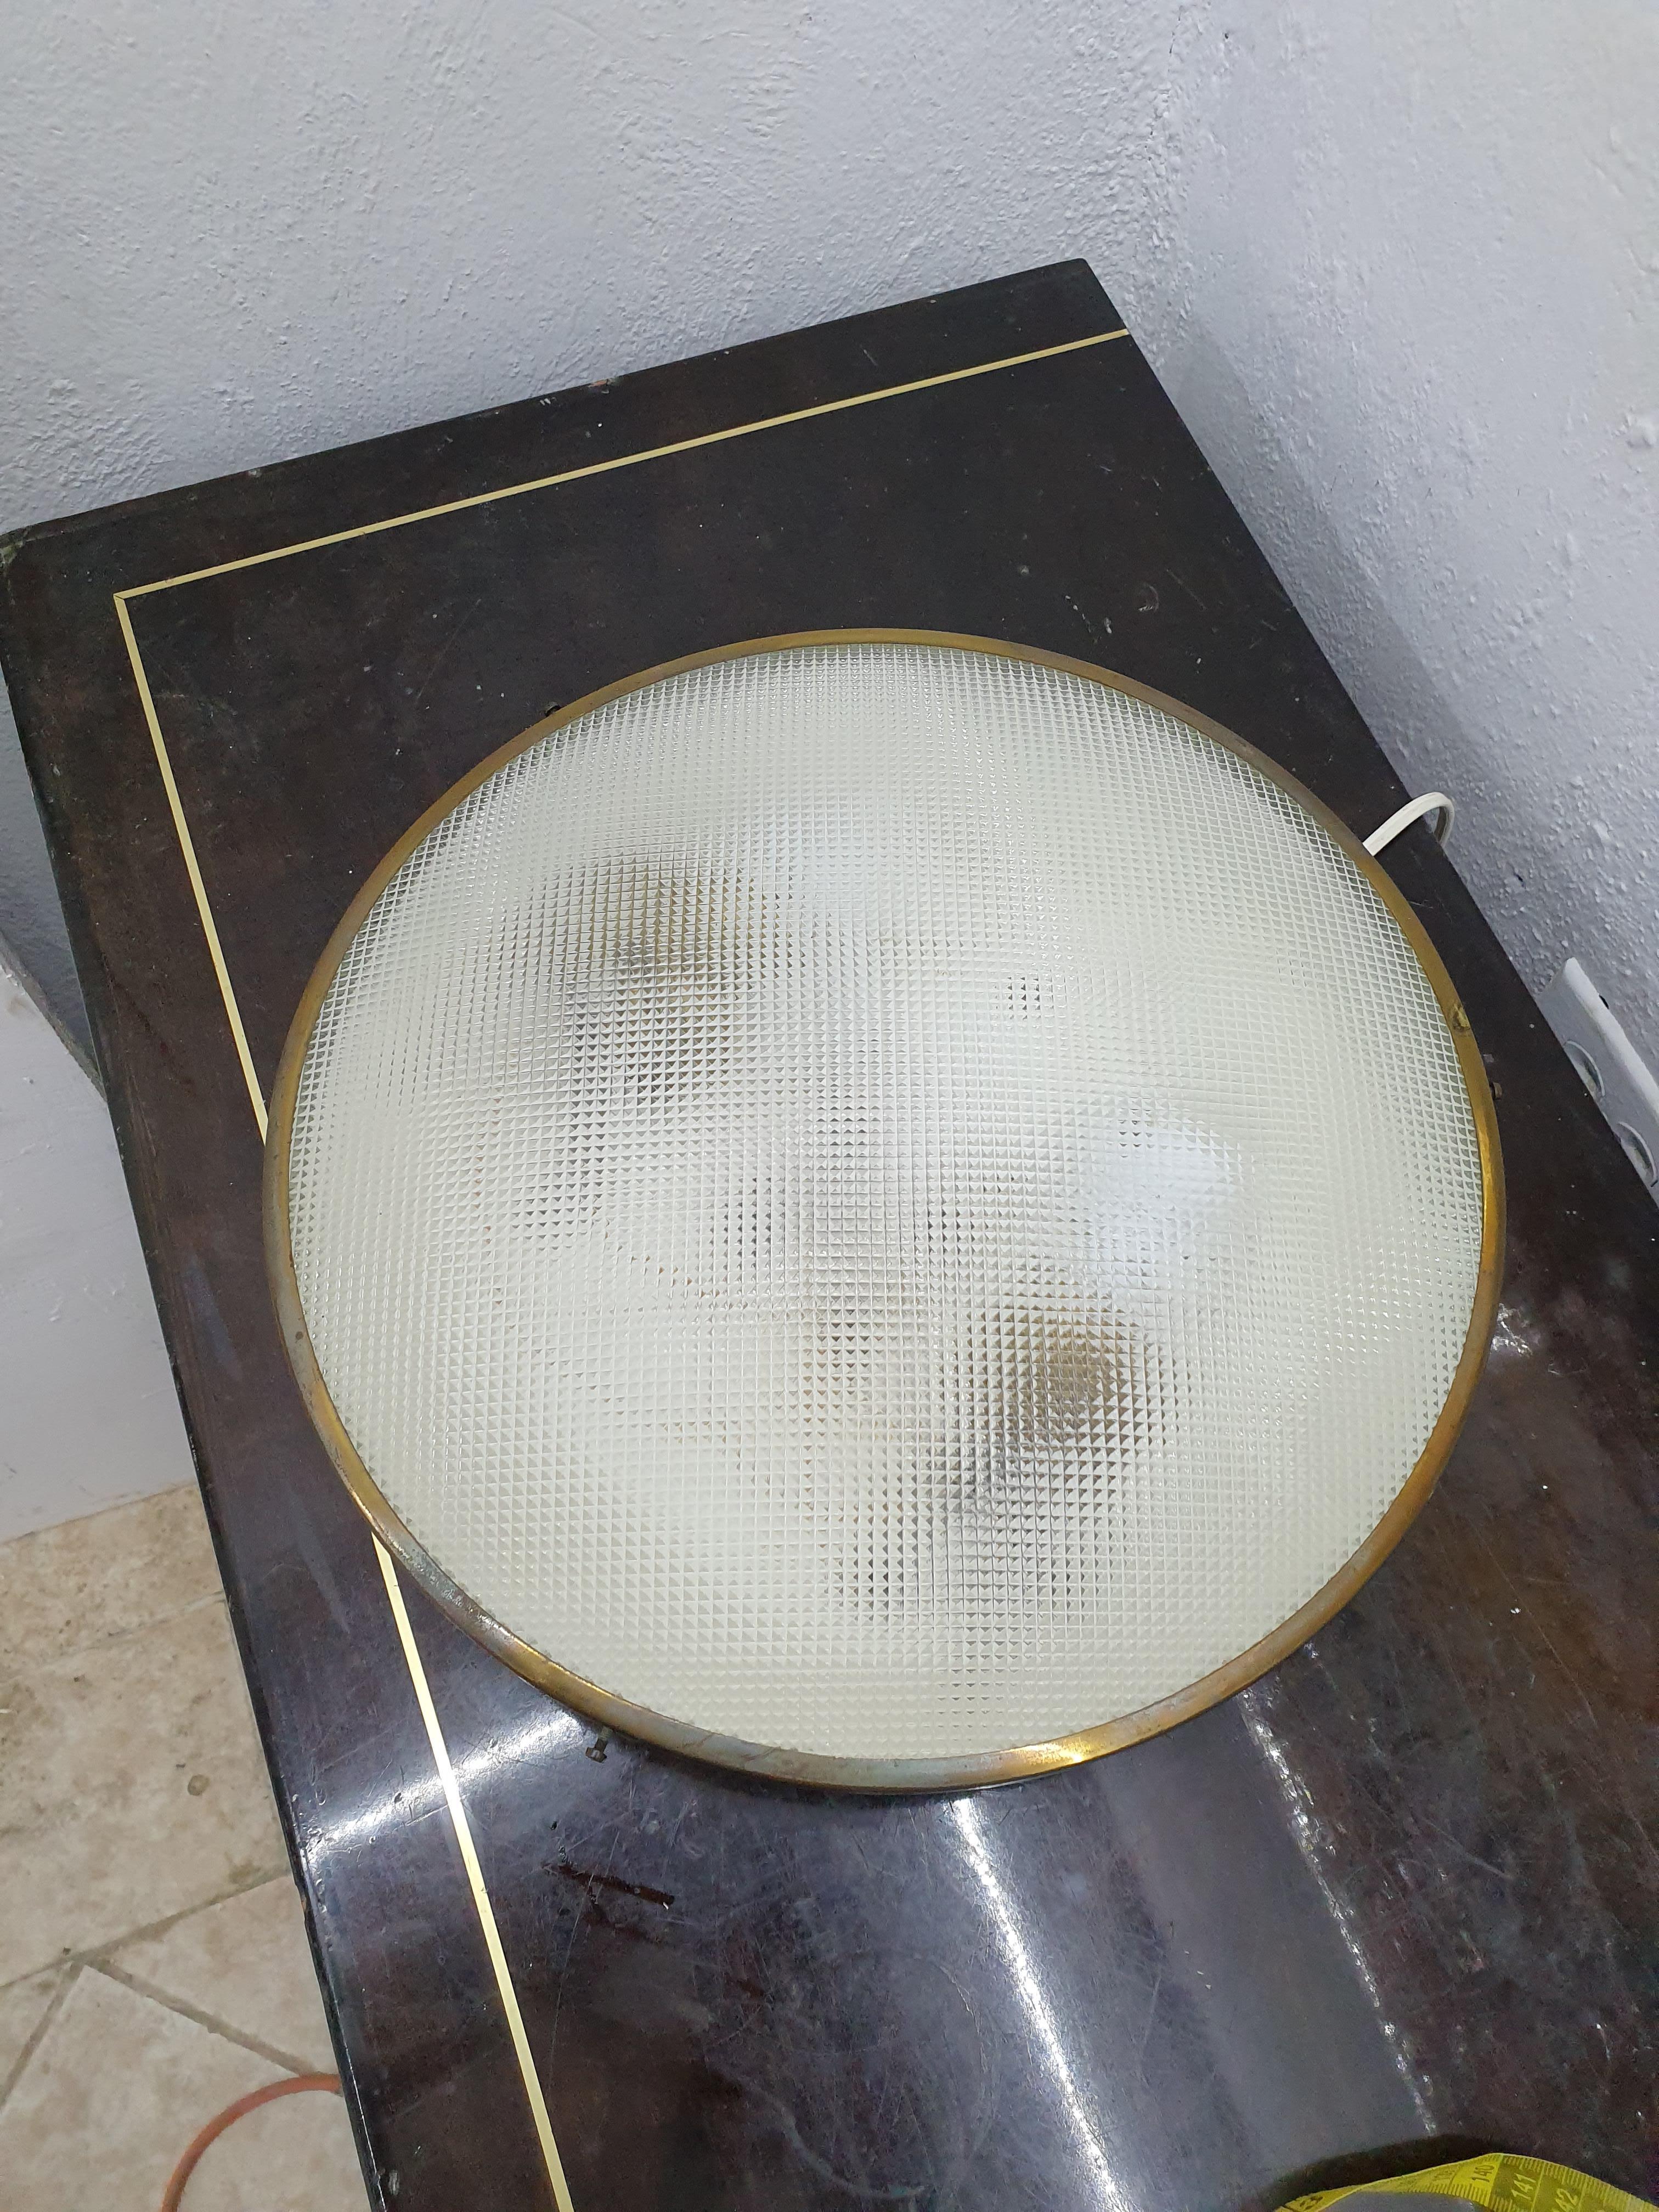 Lampe à deux lampes, murale ou encastrée, en laiton, corps en aluminium blanc et verre dépoli, à la manière de Gino Sarfatti pour Arteluce, Italie, vers 1950.
Le laiton a été poli et la lampe a été soigneusement restaurée.

